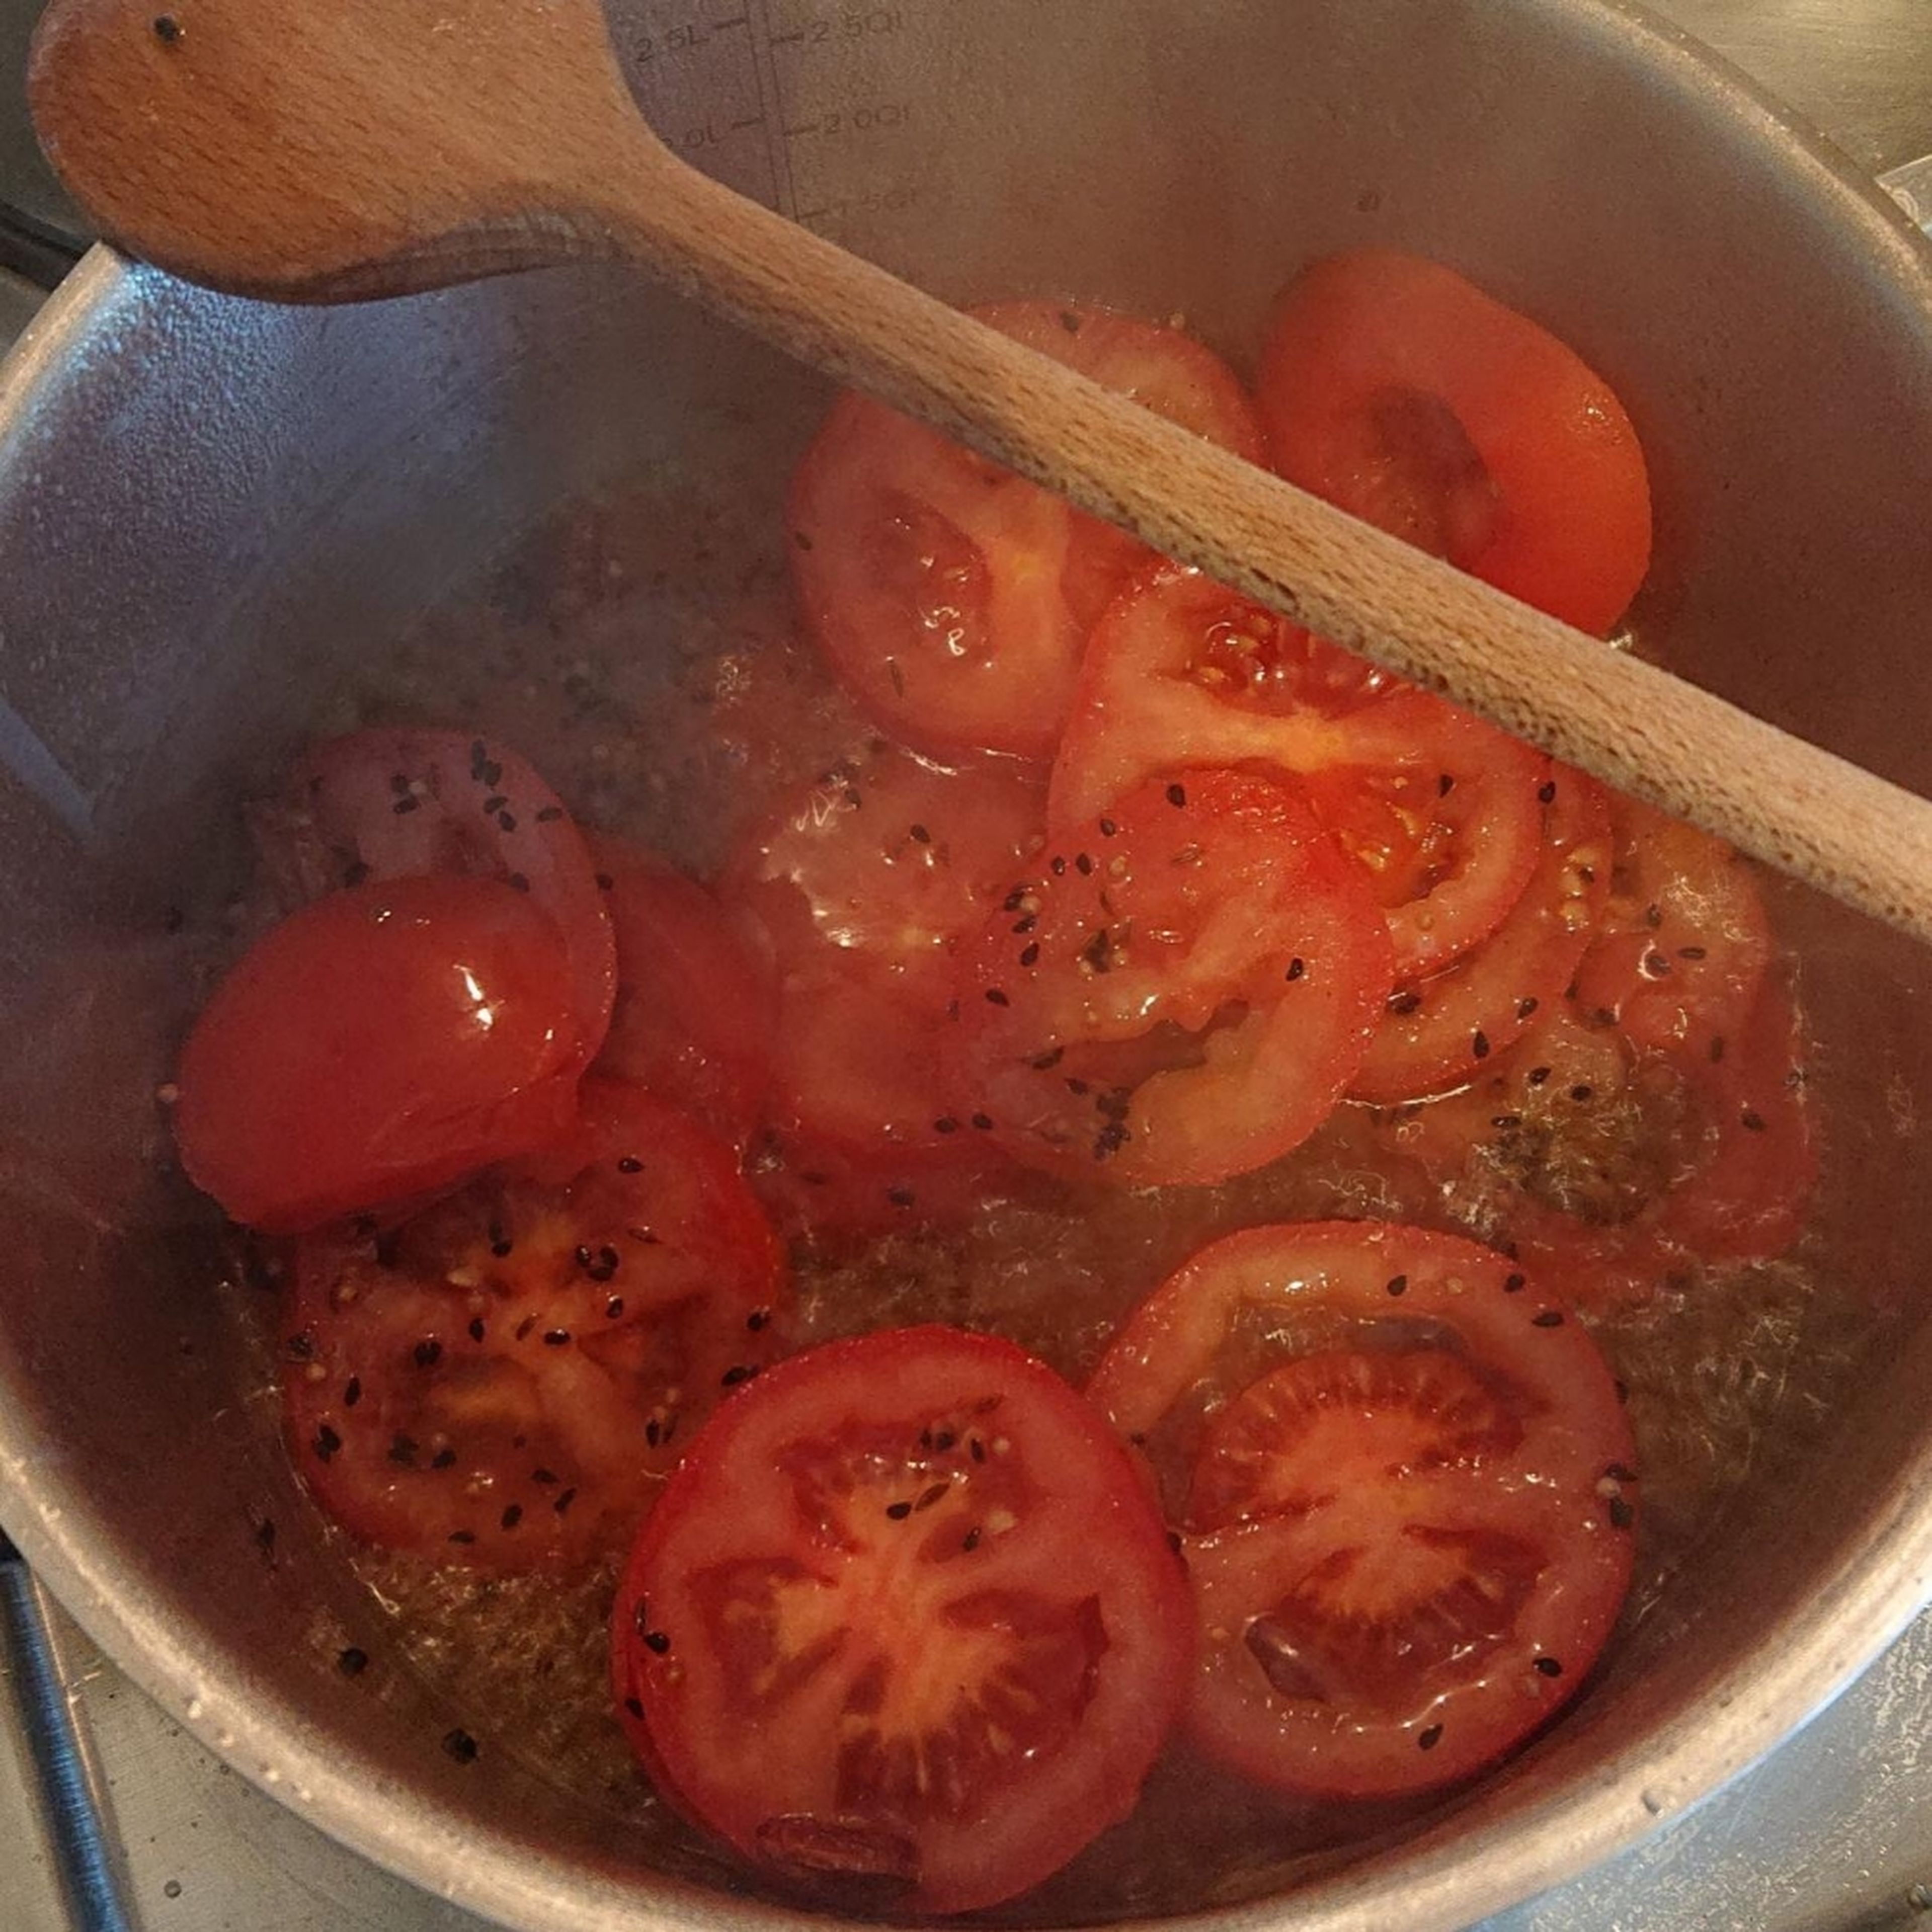 Die Tomaten in Scheiben schneiden und in die Gewürzmischung geben. Alles 3 - 5 Minuten anbraten.